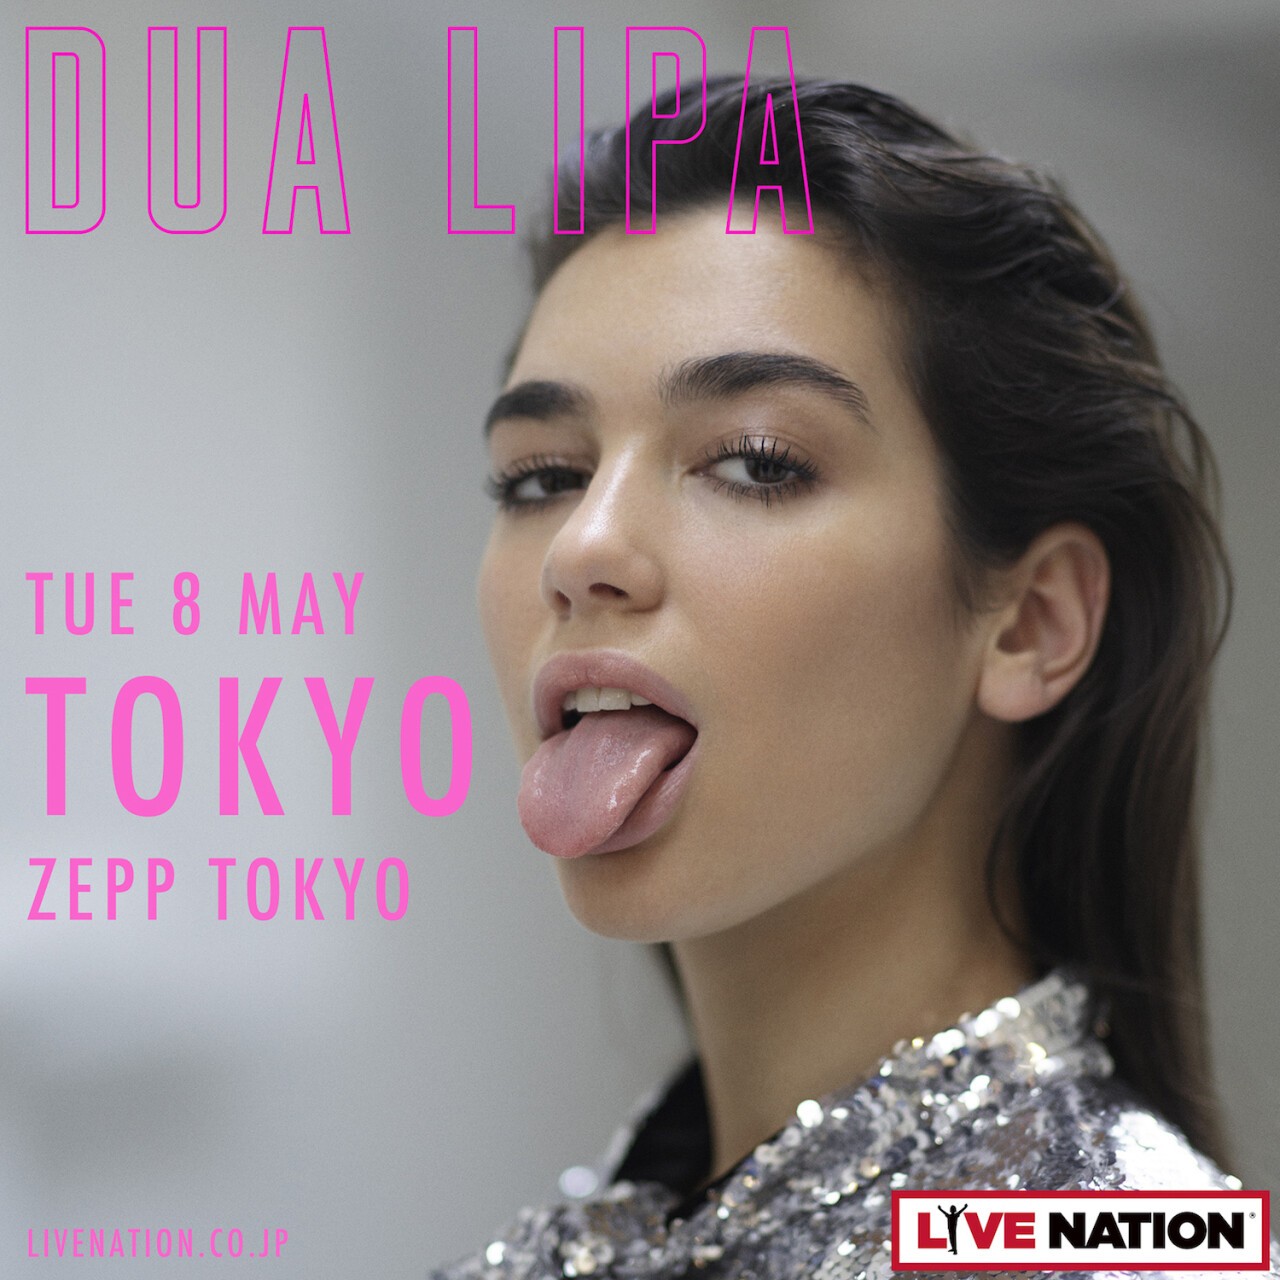 Iflyer Dua Lipa Japan Tour 18 Zepp Tokyo 東京都